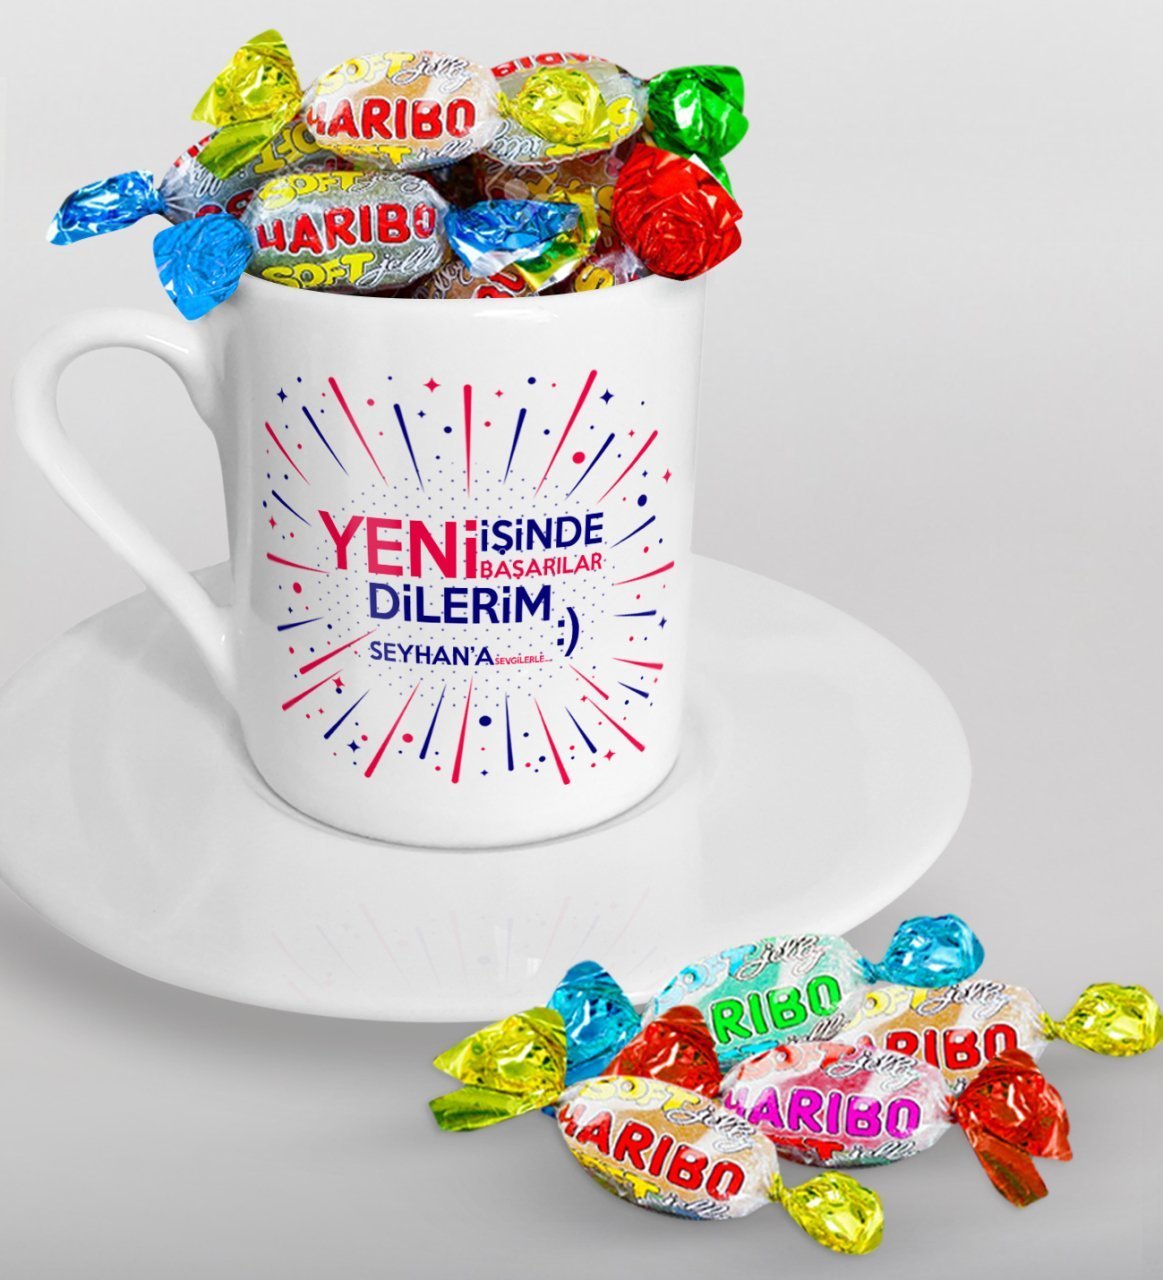 Kişiye Özel Yeni İşinde Başarılar Dilerim Türk Kahvesi Fincanı ve Haribo Şeker Hediye Seti-6